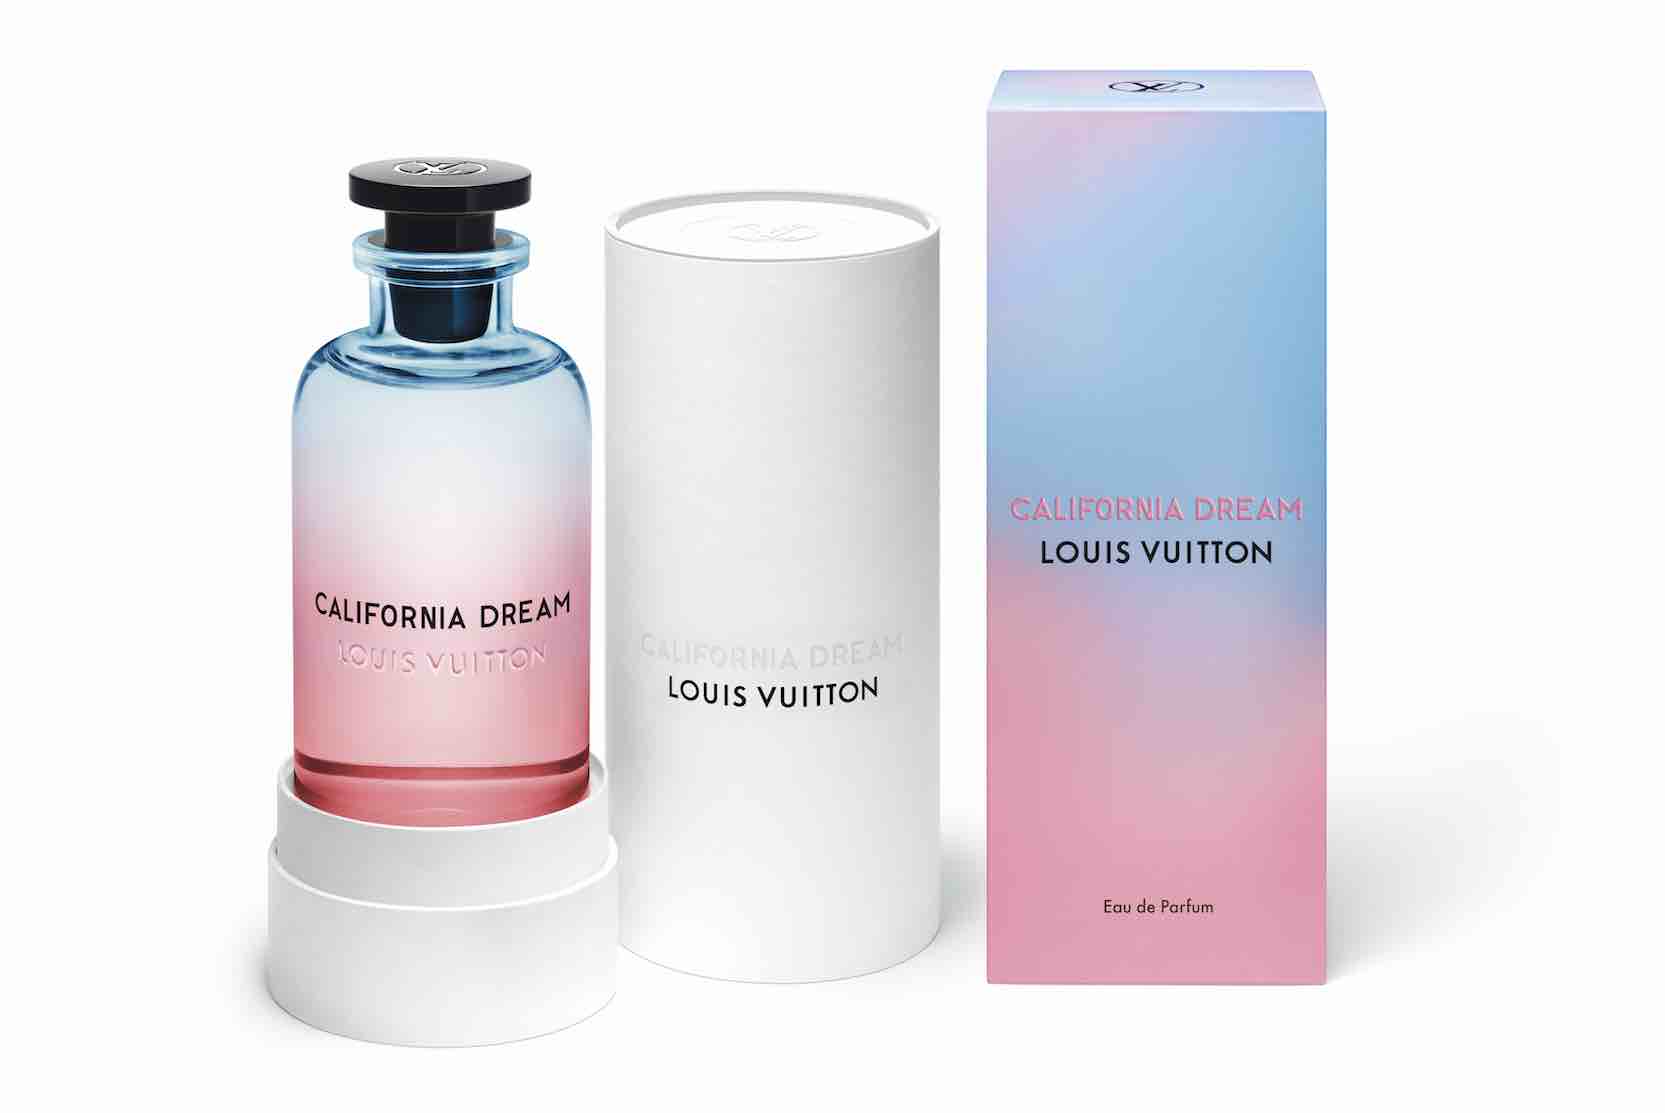 California Dream, le nouveau parfum de cologne de Louis Vuitton | www.bagssaleusa.com/product-category/wallets/